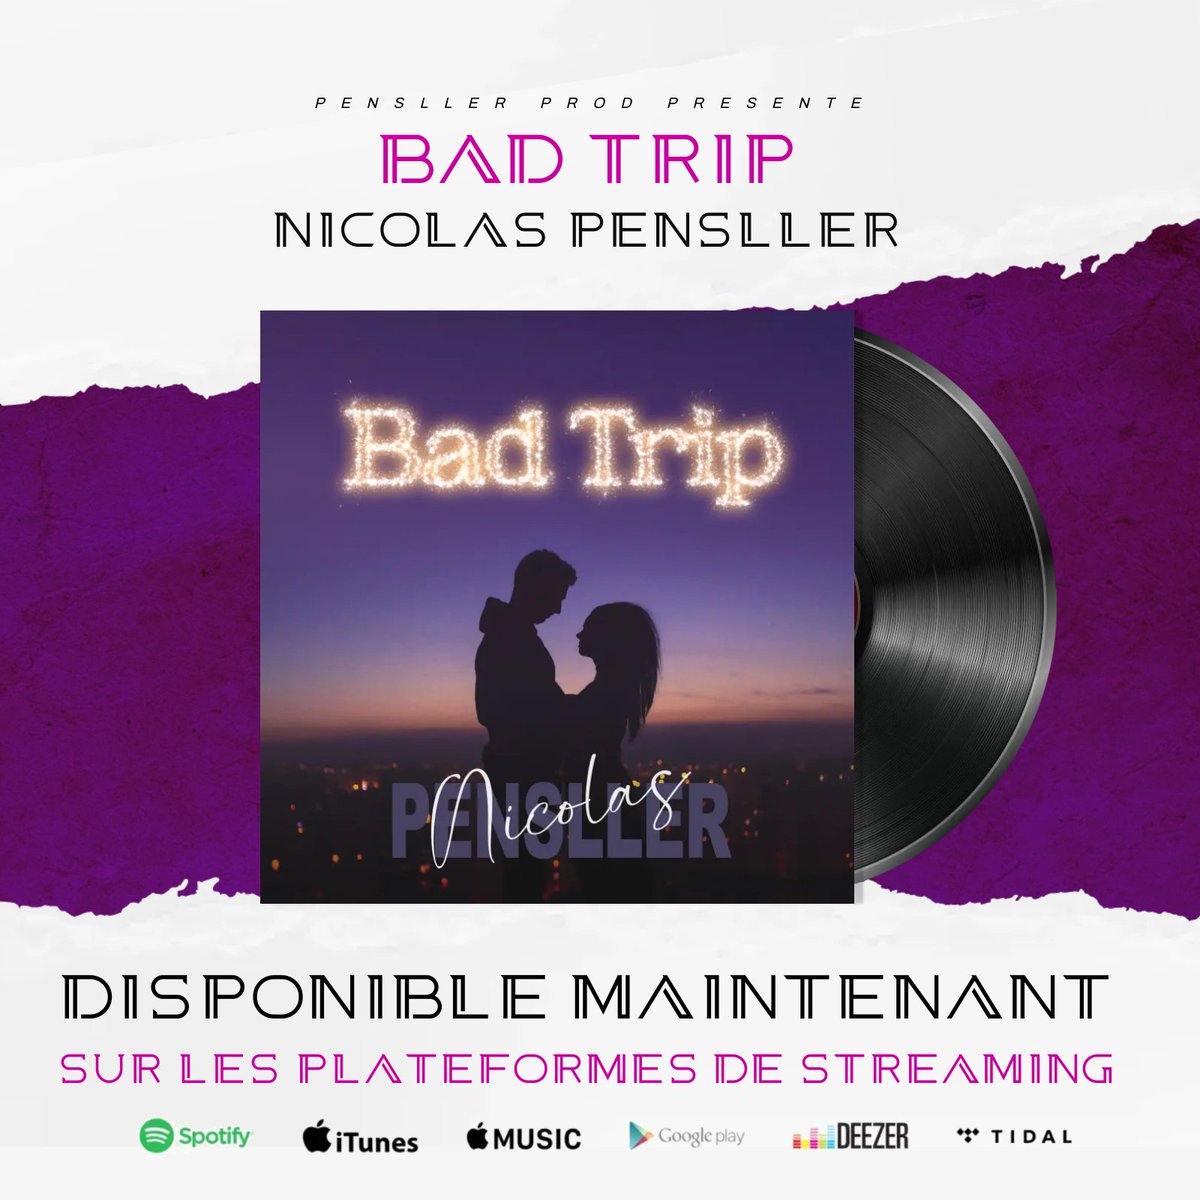 🔴 Bad Trip 🔴
Le nouveau single est disponible sur toutes les plateformes de streaming ! 
Cette chanson vous appartient maintenant, à vous de la faire vivre 😉. 
#spotifyplaylist #spotify #deezermusic #applemusic #popfrancaise #idf1 #variétésfrançaises